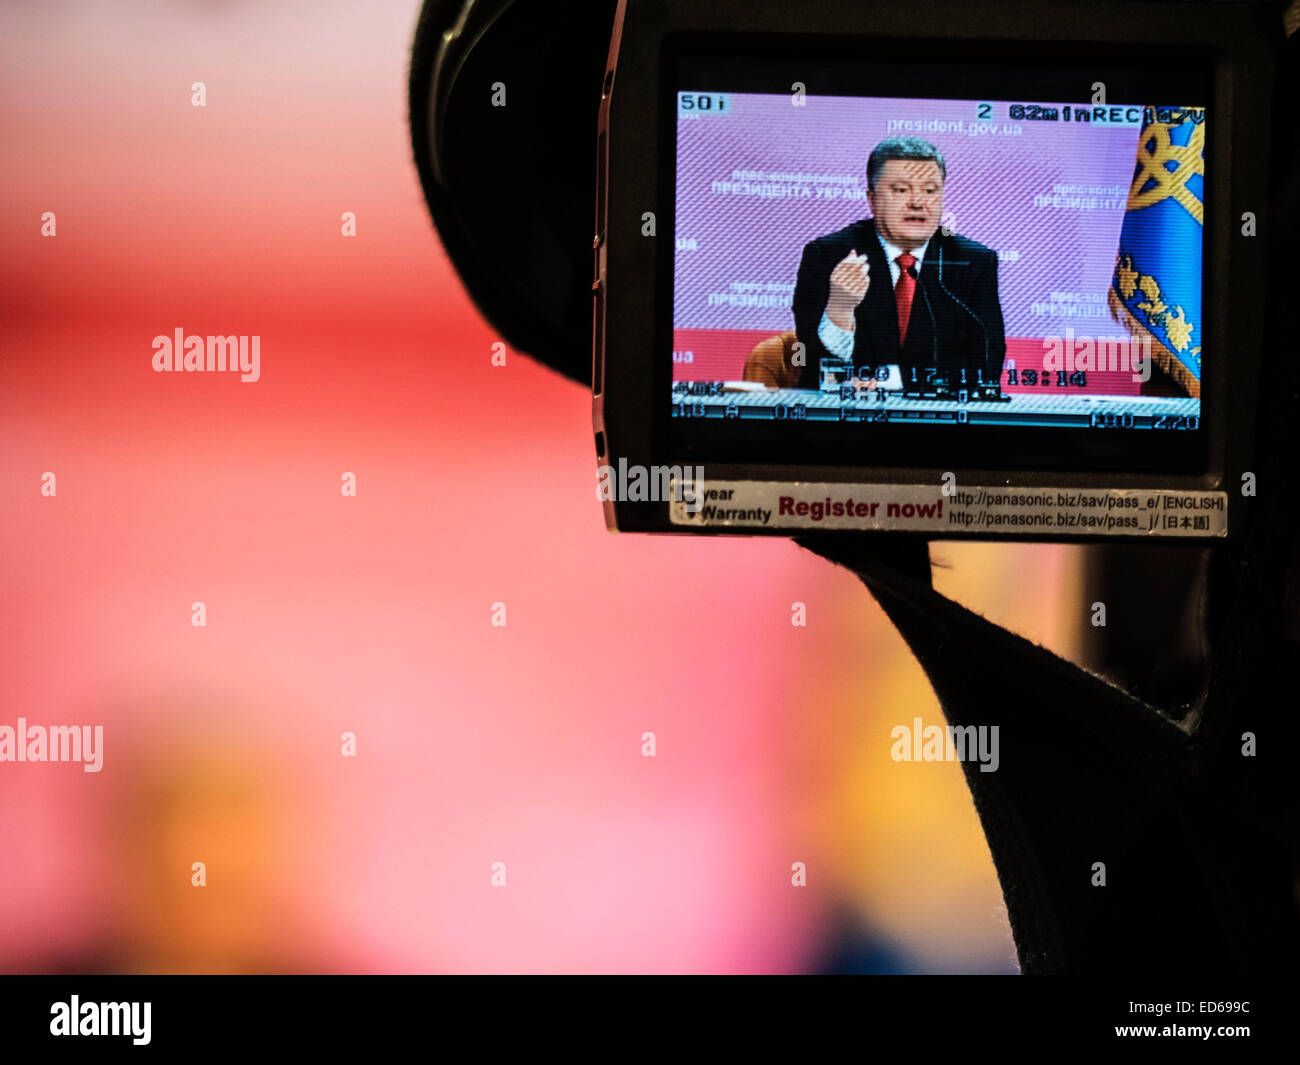 Kiew, Ukraine. 29. Dezember 2014. Der ukrainische Präsident Poroshenko statt eine abschließende Pressekonferenz. Die Hauptfrage, Ukrainer einer Antwort wollen - ob zur Stabilisierung der Situation im Osten des Landes, und er erwartet, dass die ukrainische Wirtschaft. Bildnachweis: Igor Golovnov/Alamy Live-Nachrichten Stockfoto